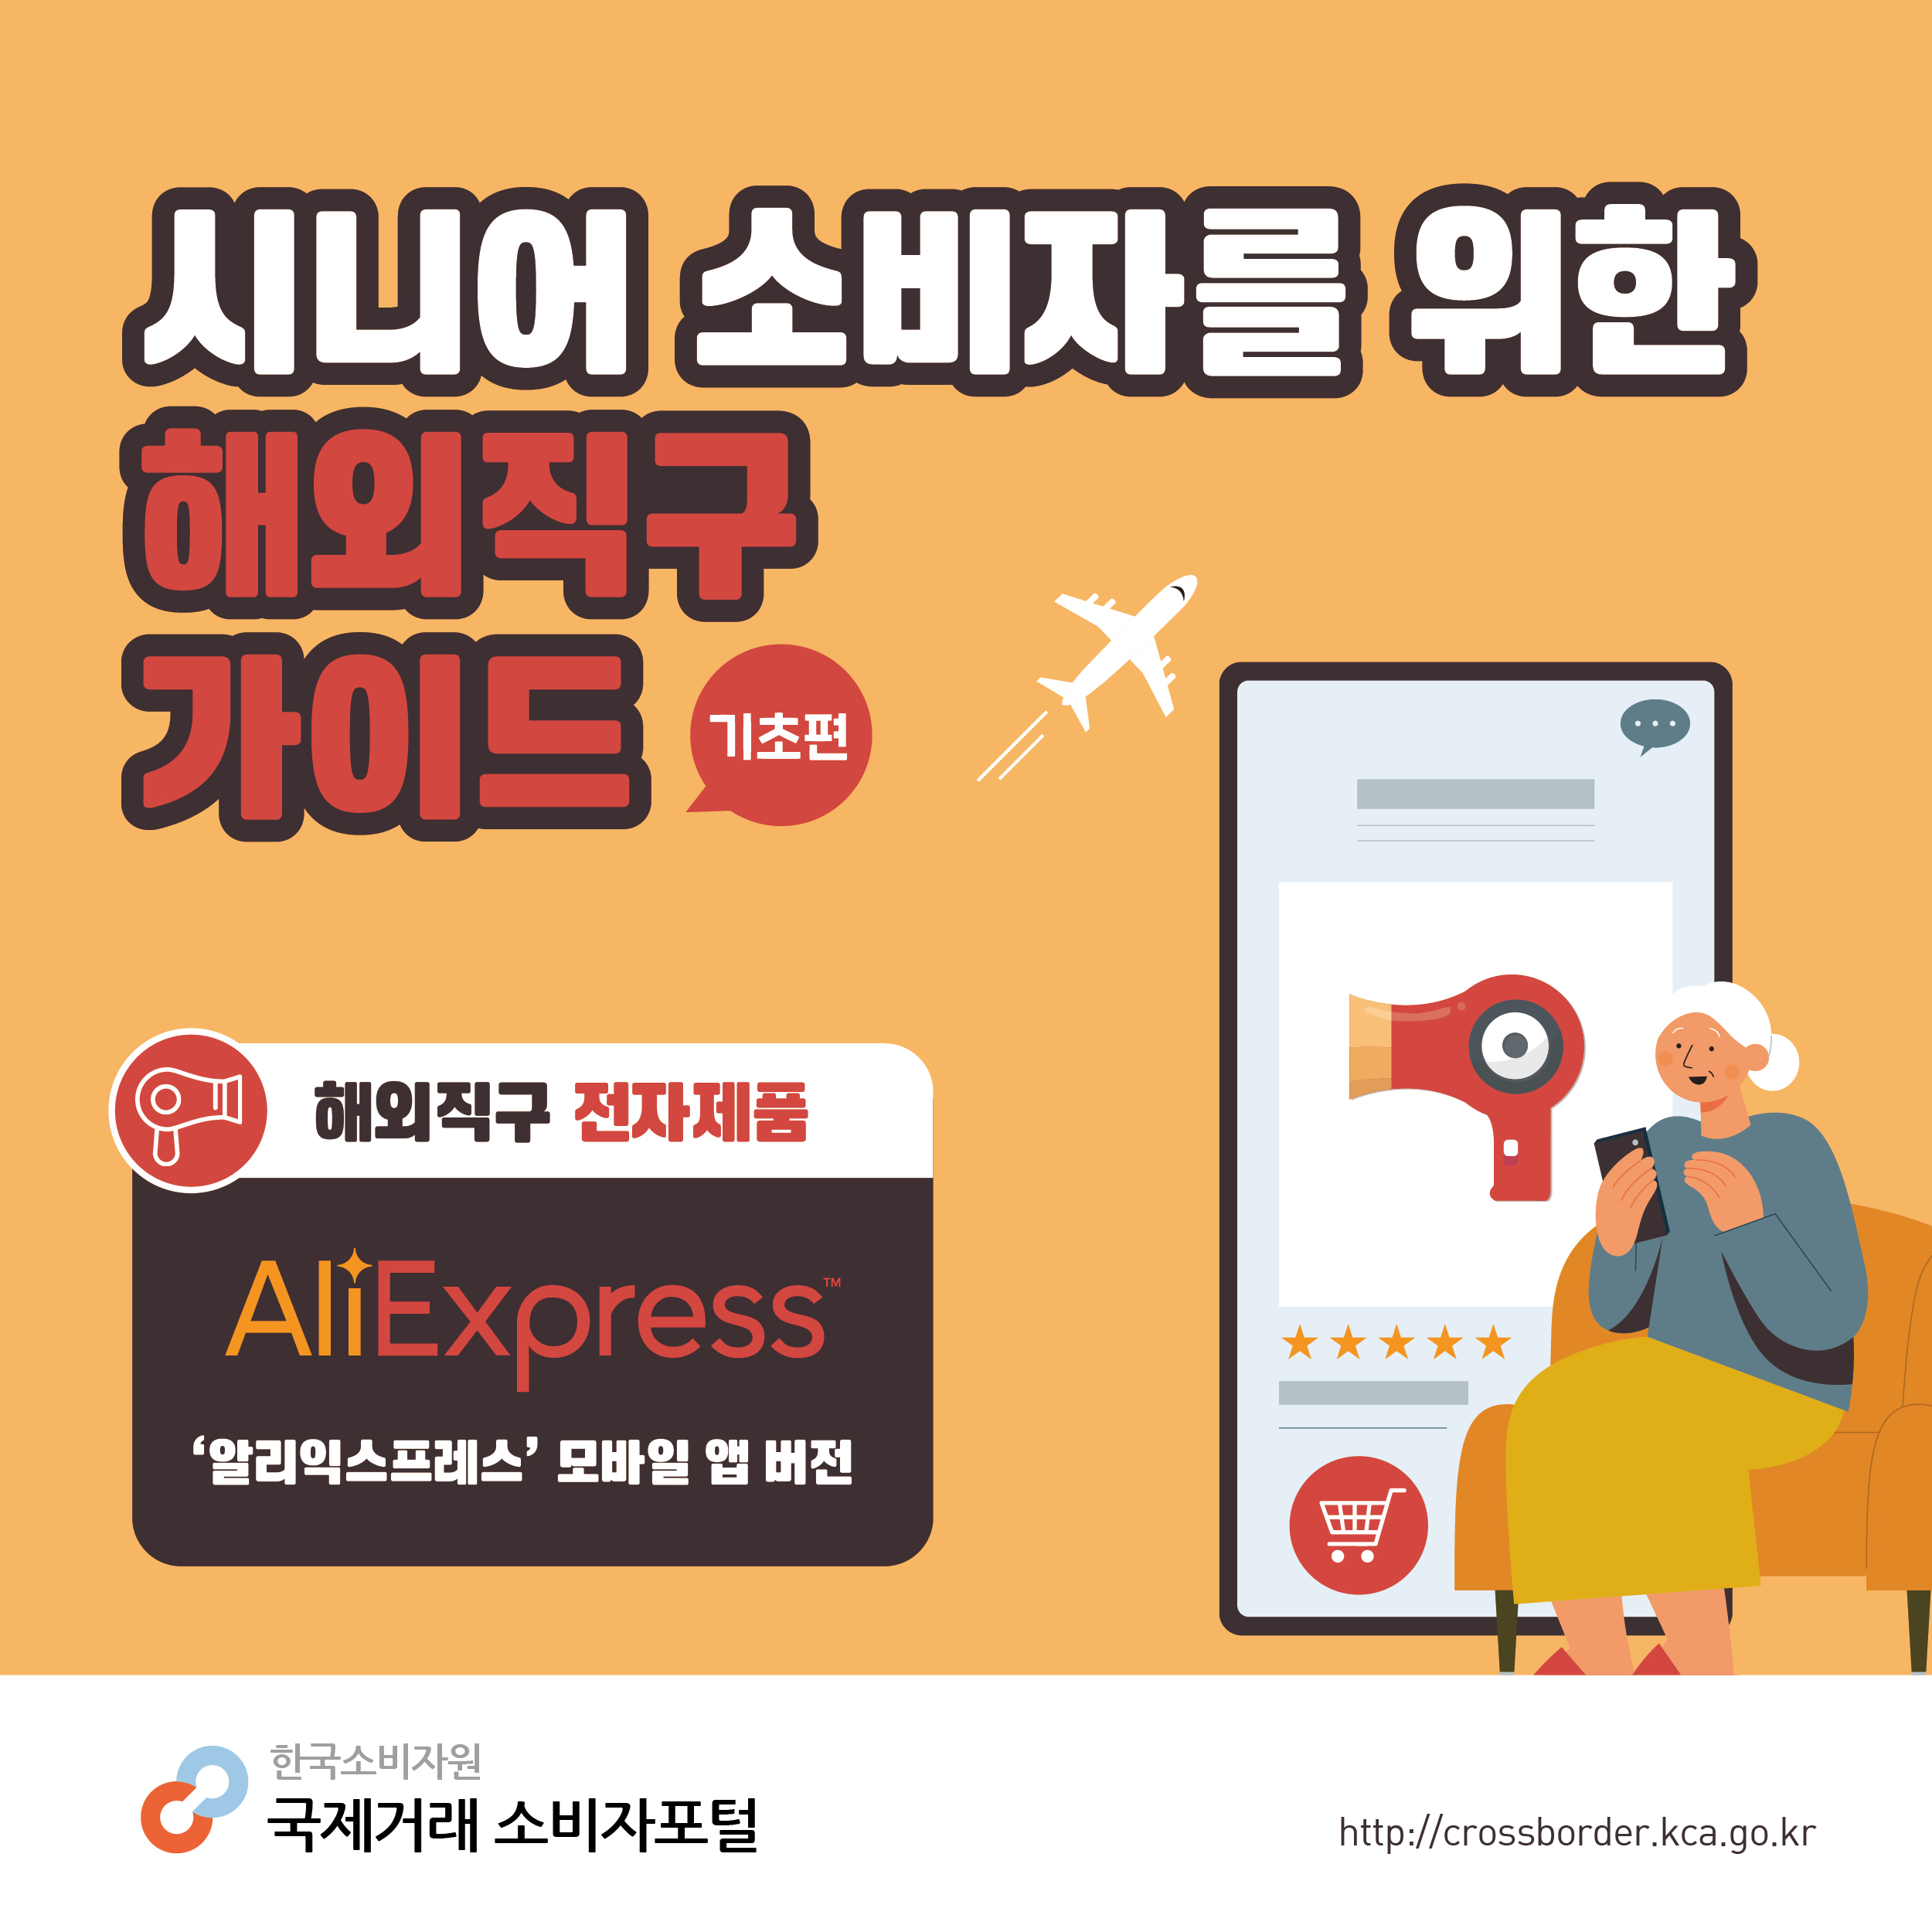 #1. 시니어 소비자를 위한 해외직구 가이드 기초편, 해외직구 전자제품(AliExpress 모바일 앱 버전) 